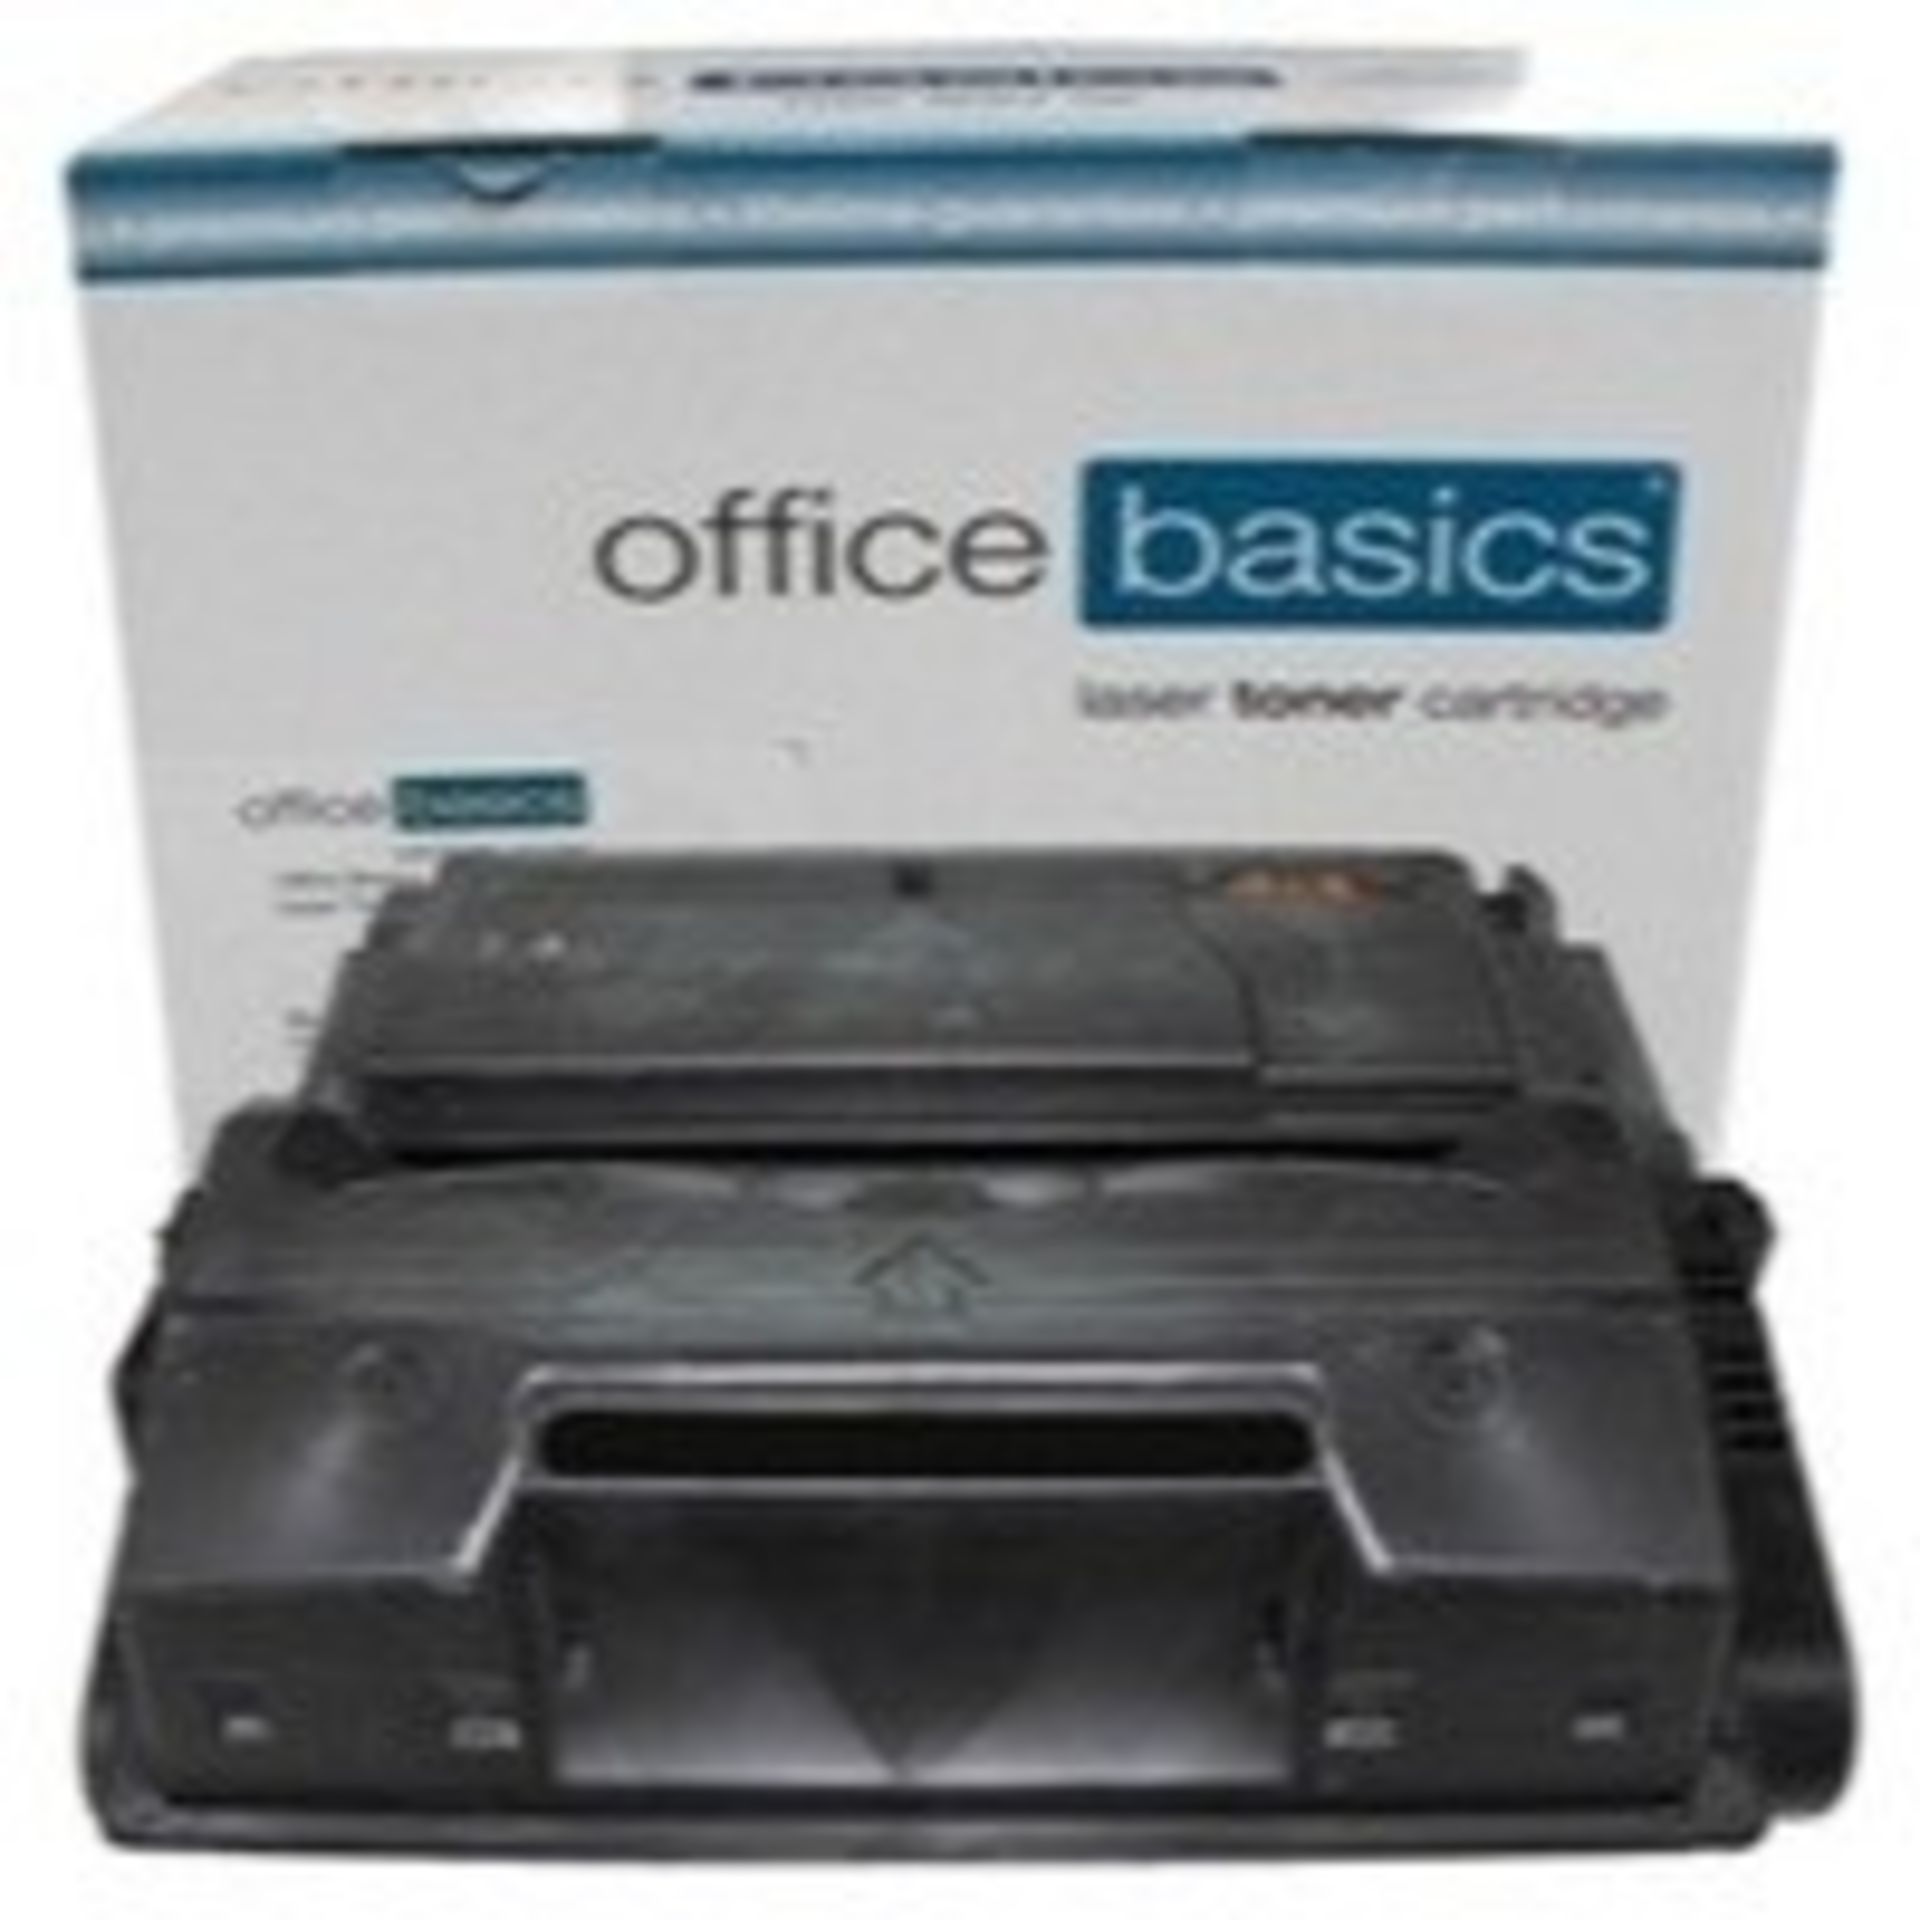 1 BOXED OFFICE BASICS LASERJET TONER CARTIDGE FOR